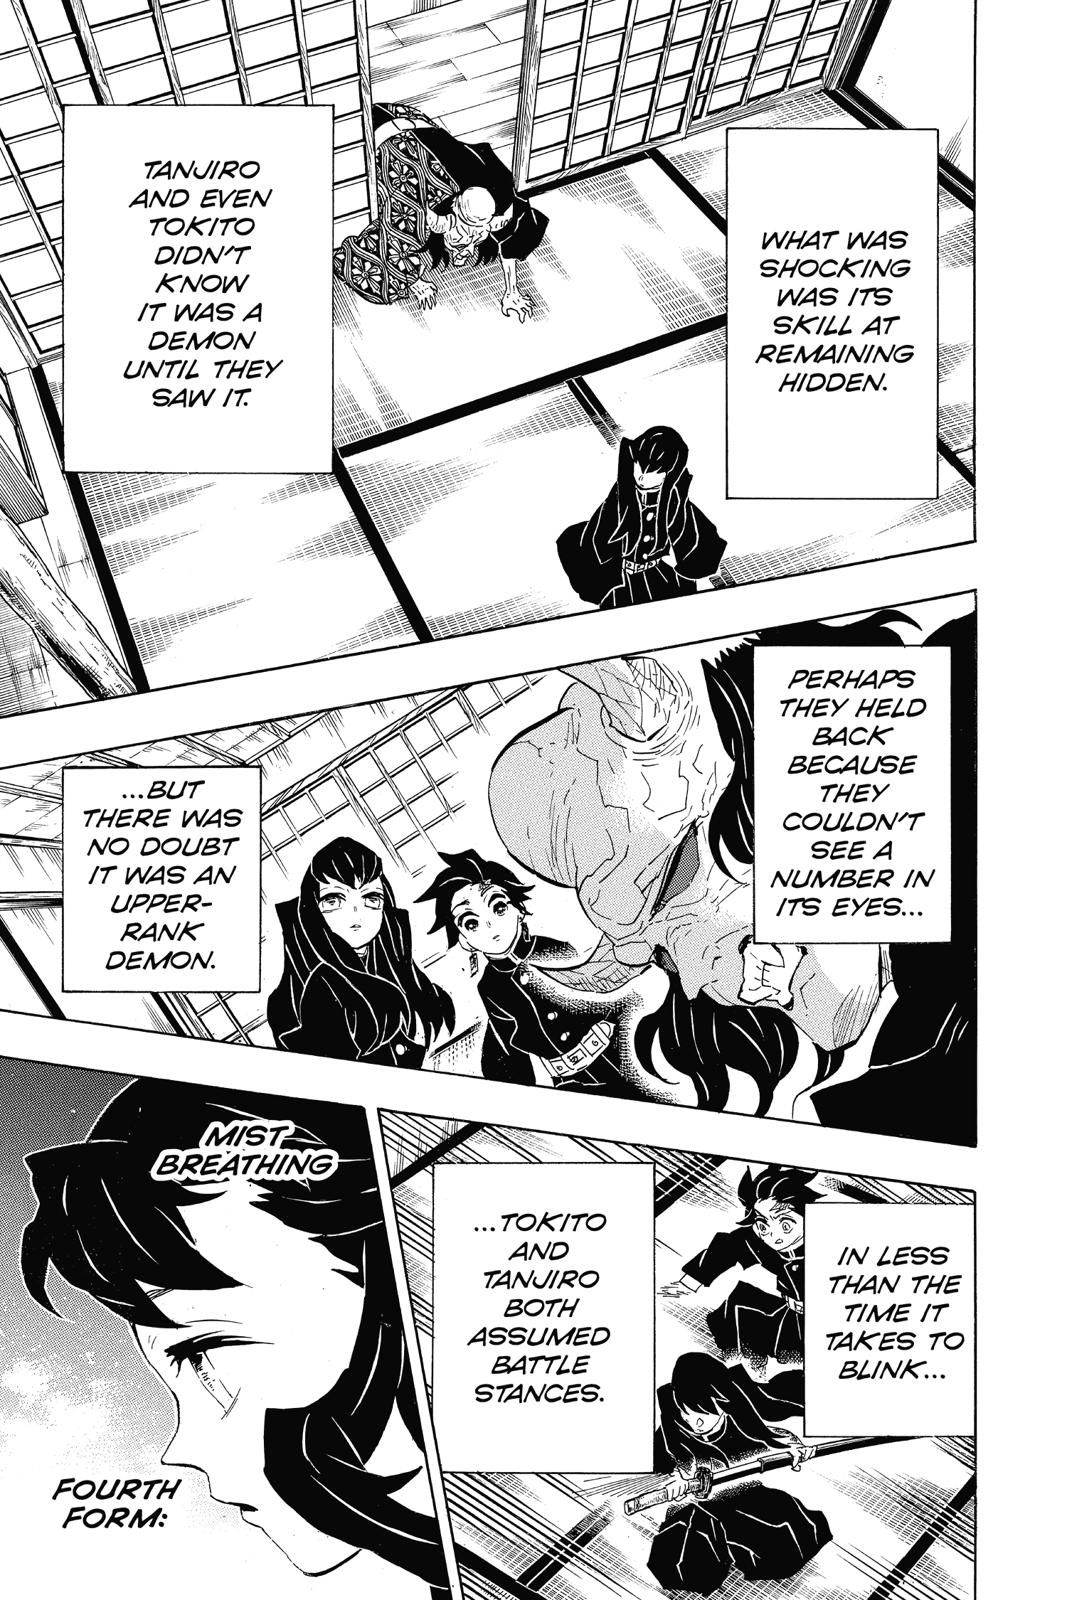 Demon Slayer Manga Manga Chapter - 106 - image 5